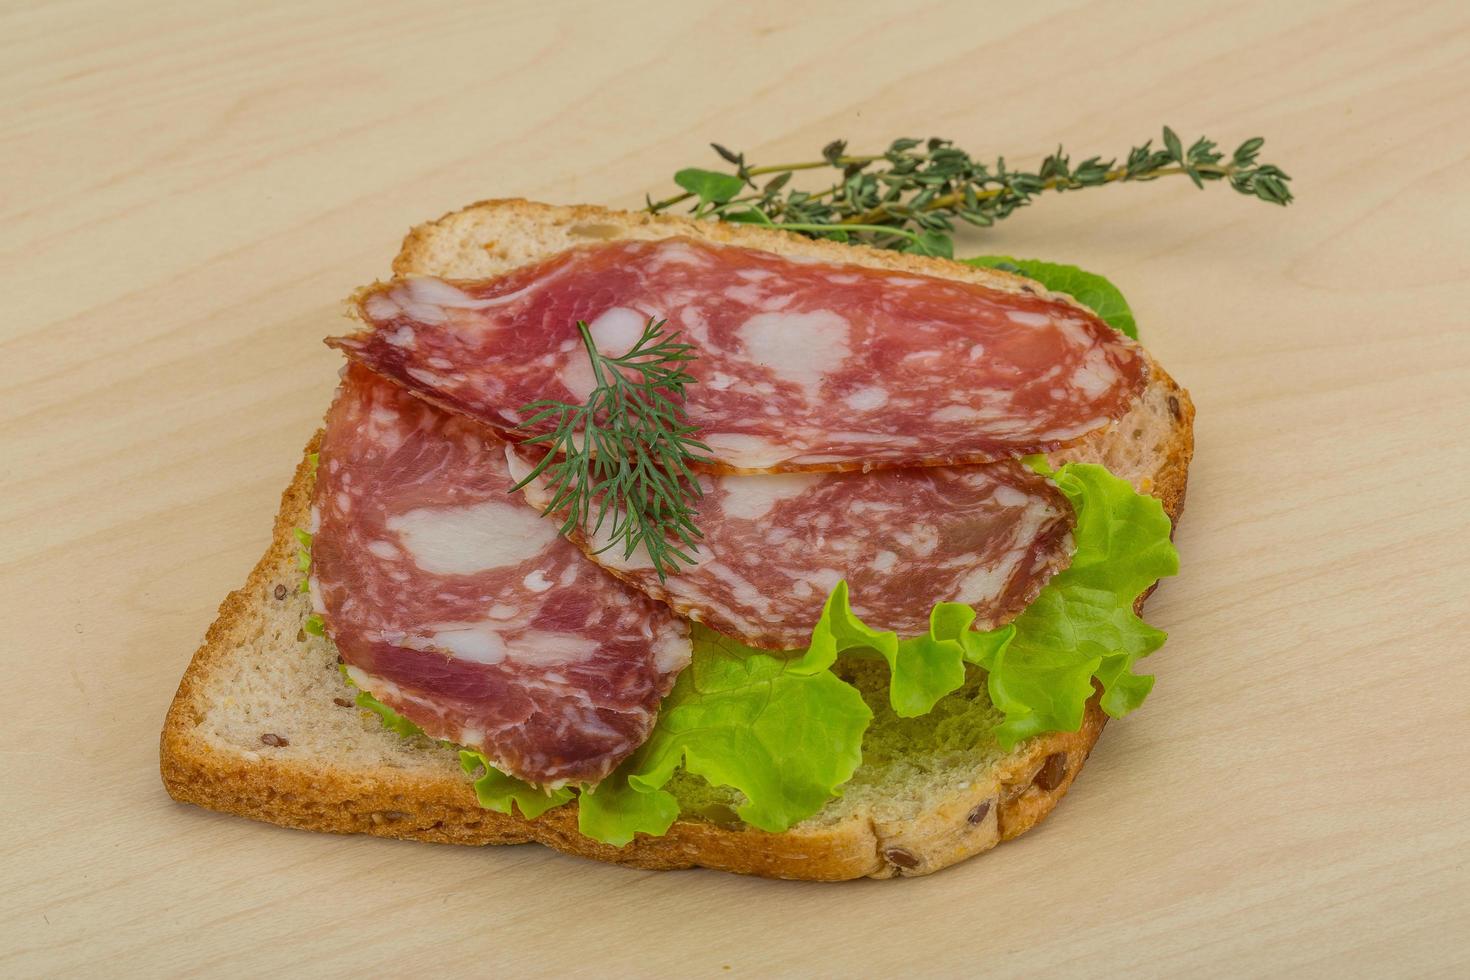 salami smörgås på trä- bakgrund foto